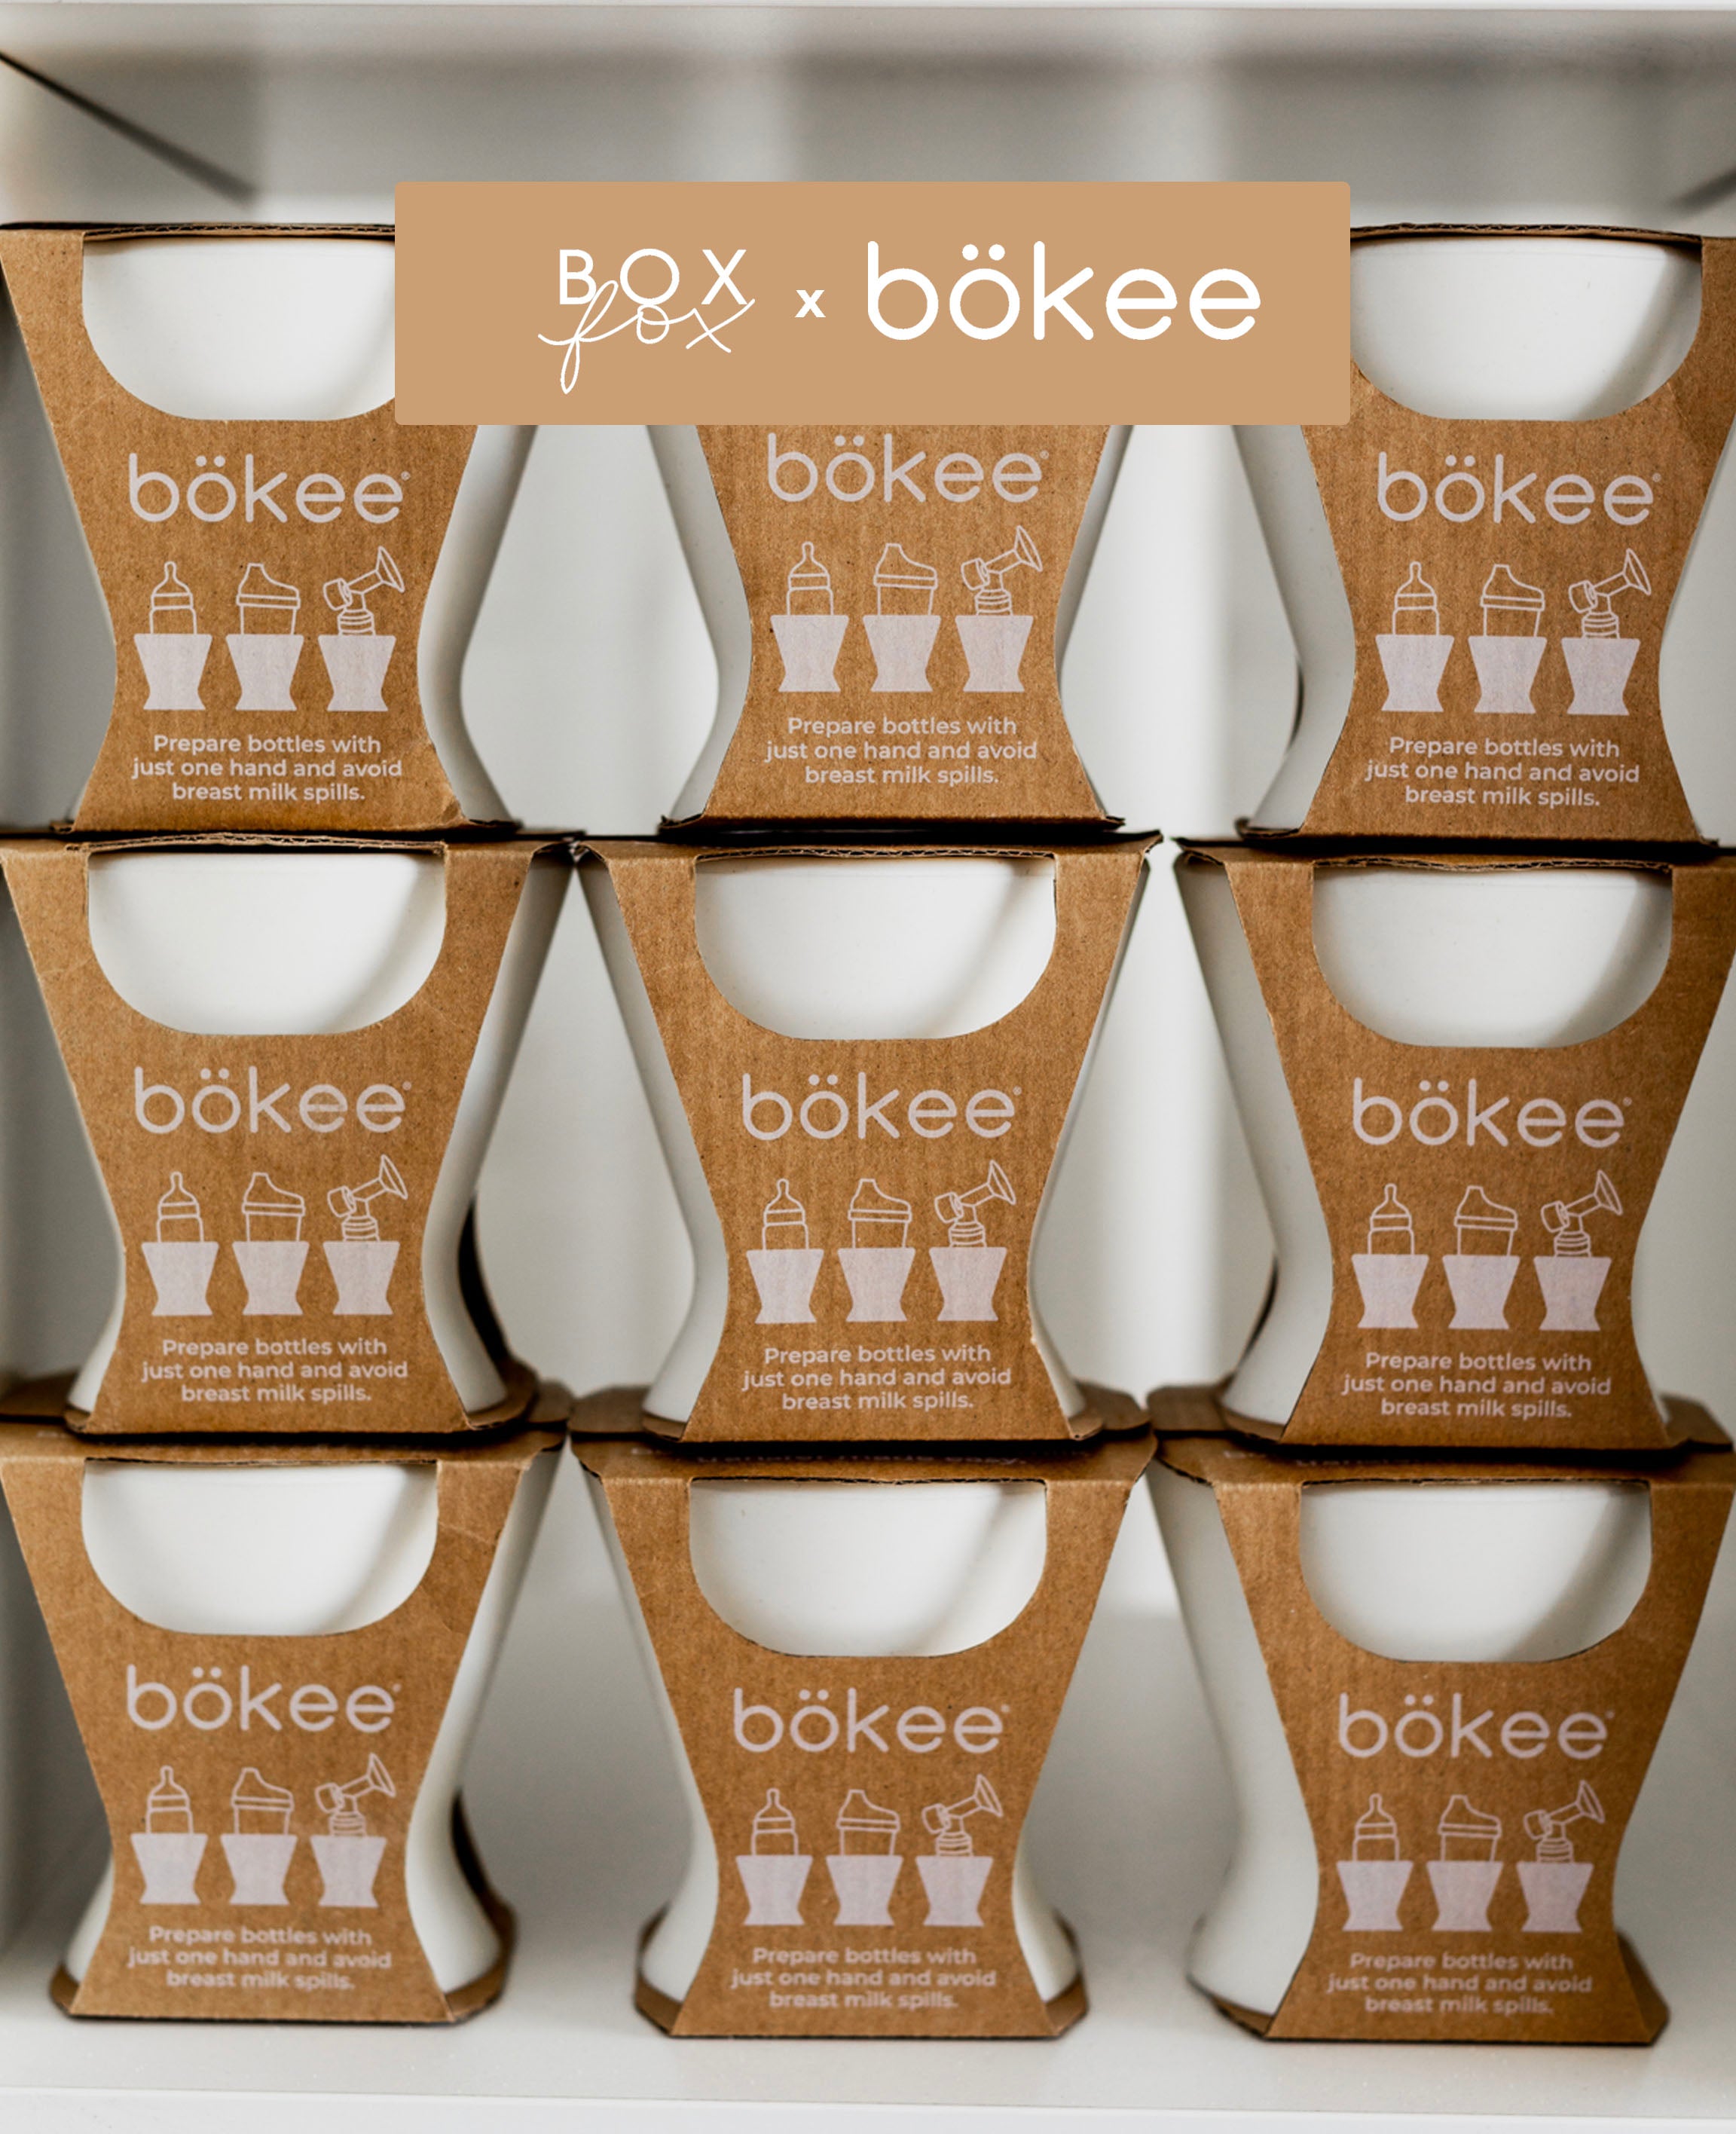 BOXFOX x bökee